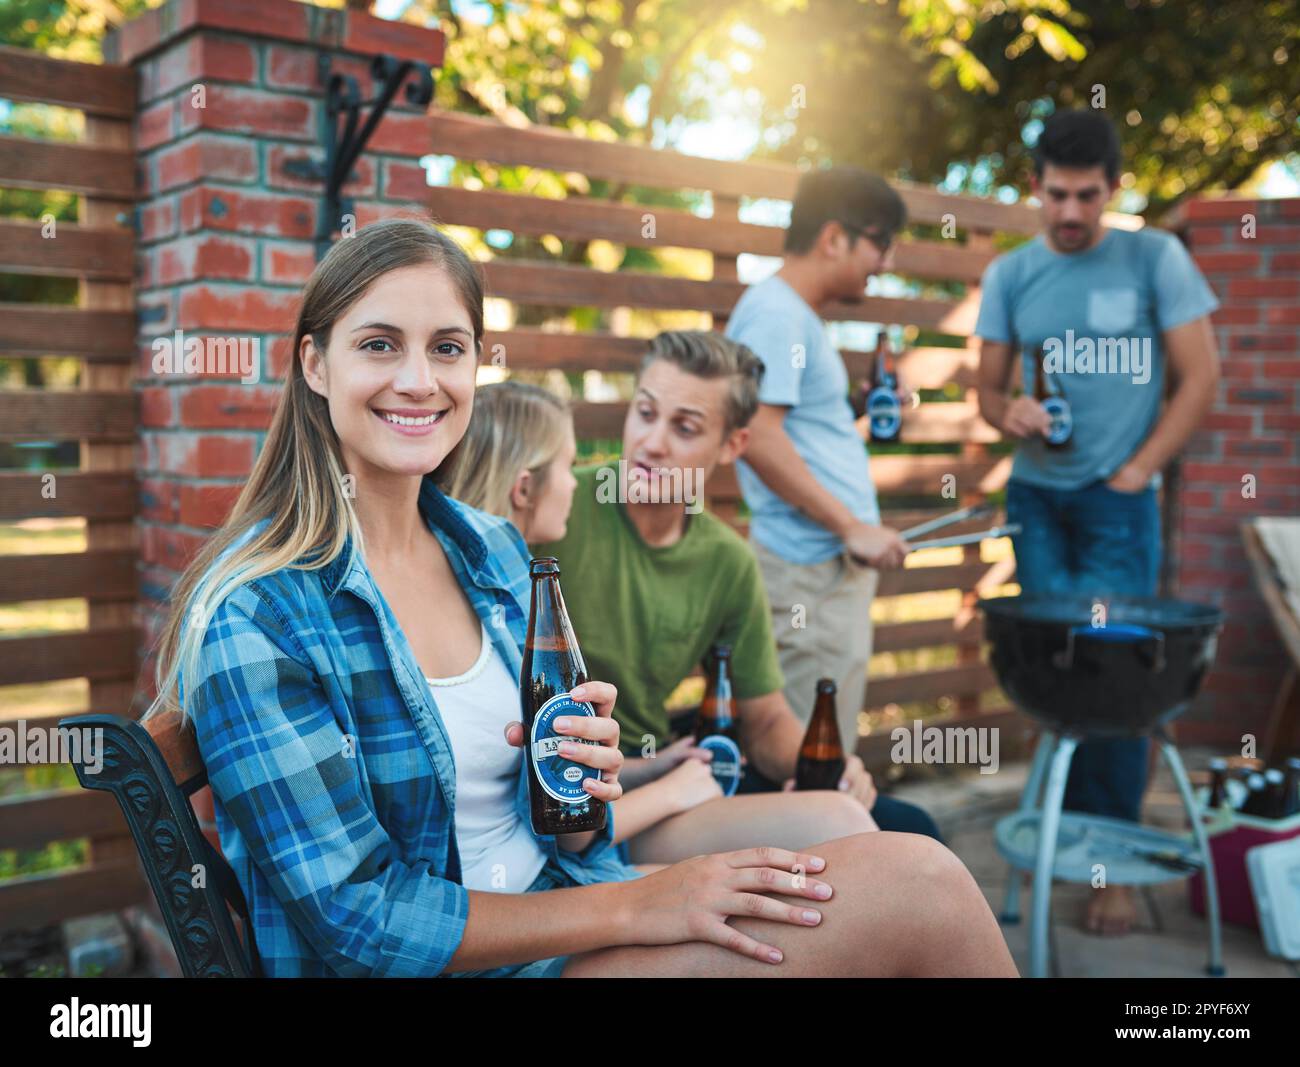 Momenti di divertimento con alcuni dei miei preferiti. una giovane donna felice che gustava una birra al barbecue con i suoi amici. Foto Stock